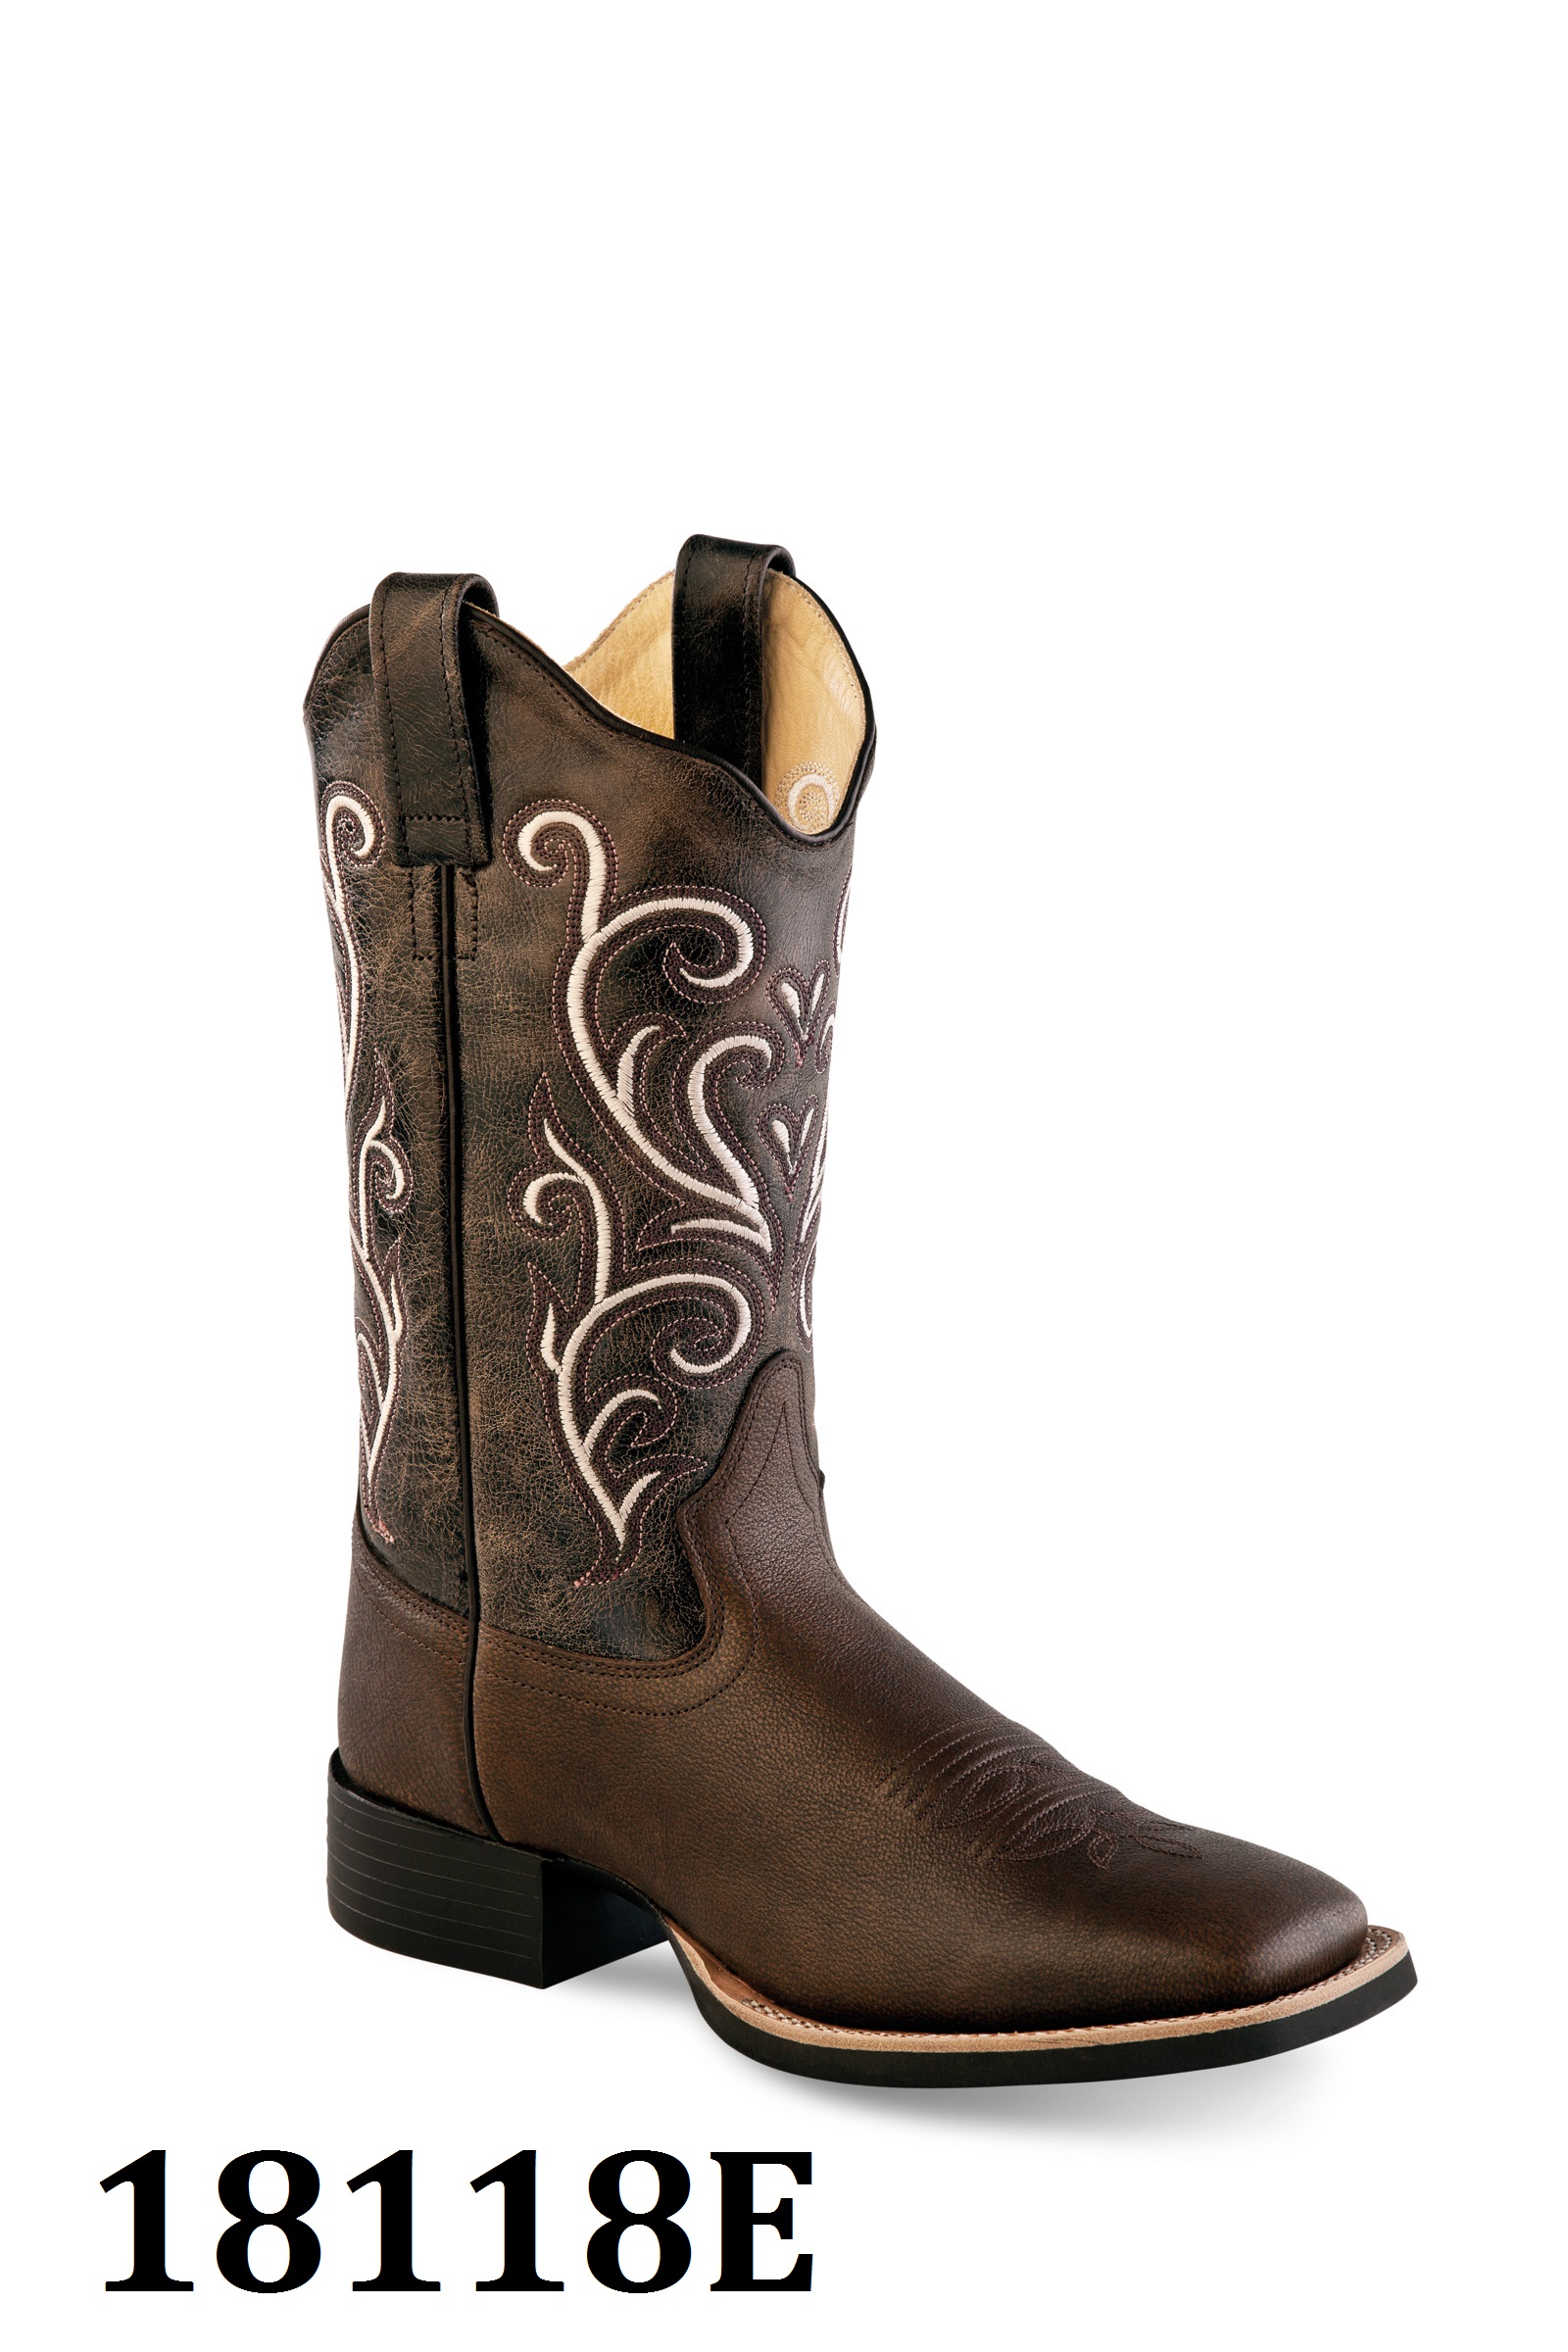 Cowboy boots ladies 18118E, brown